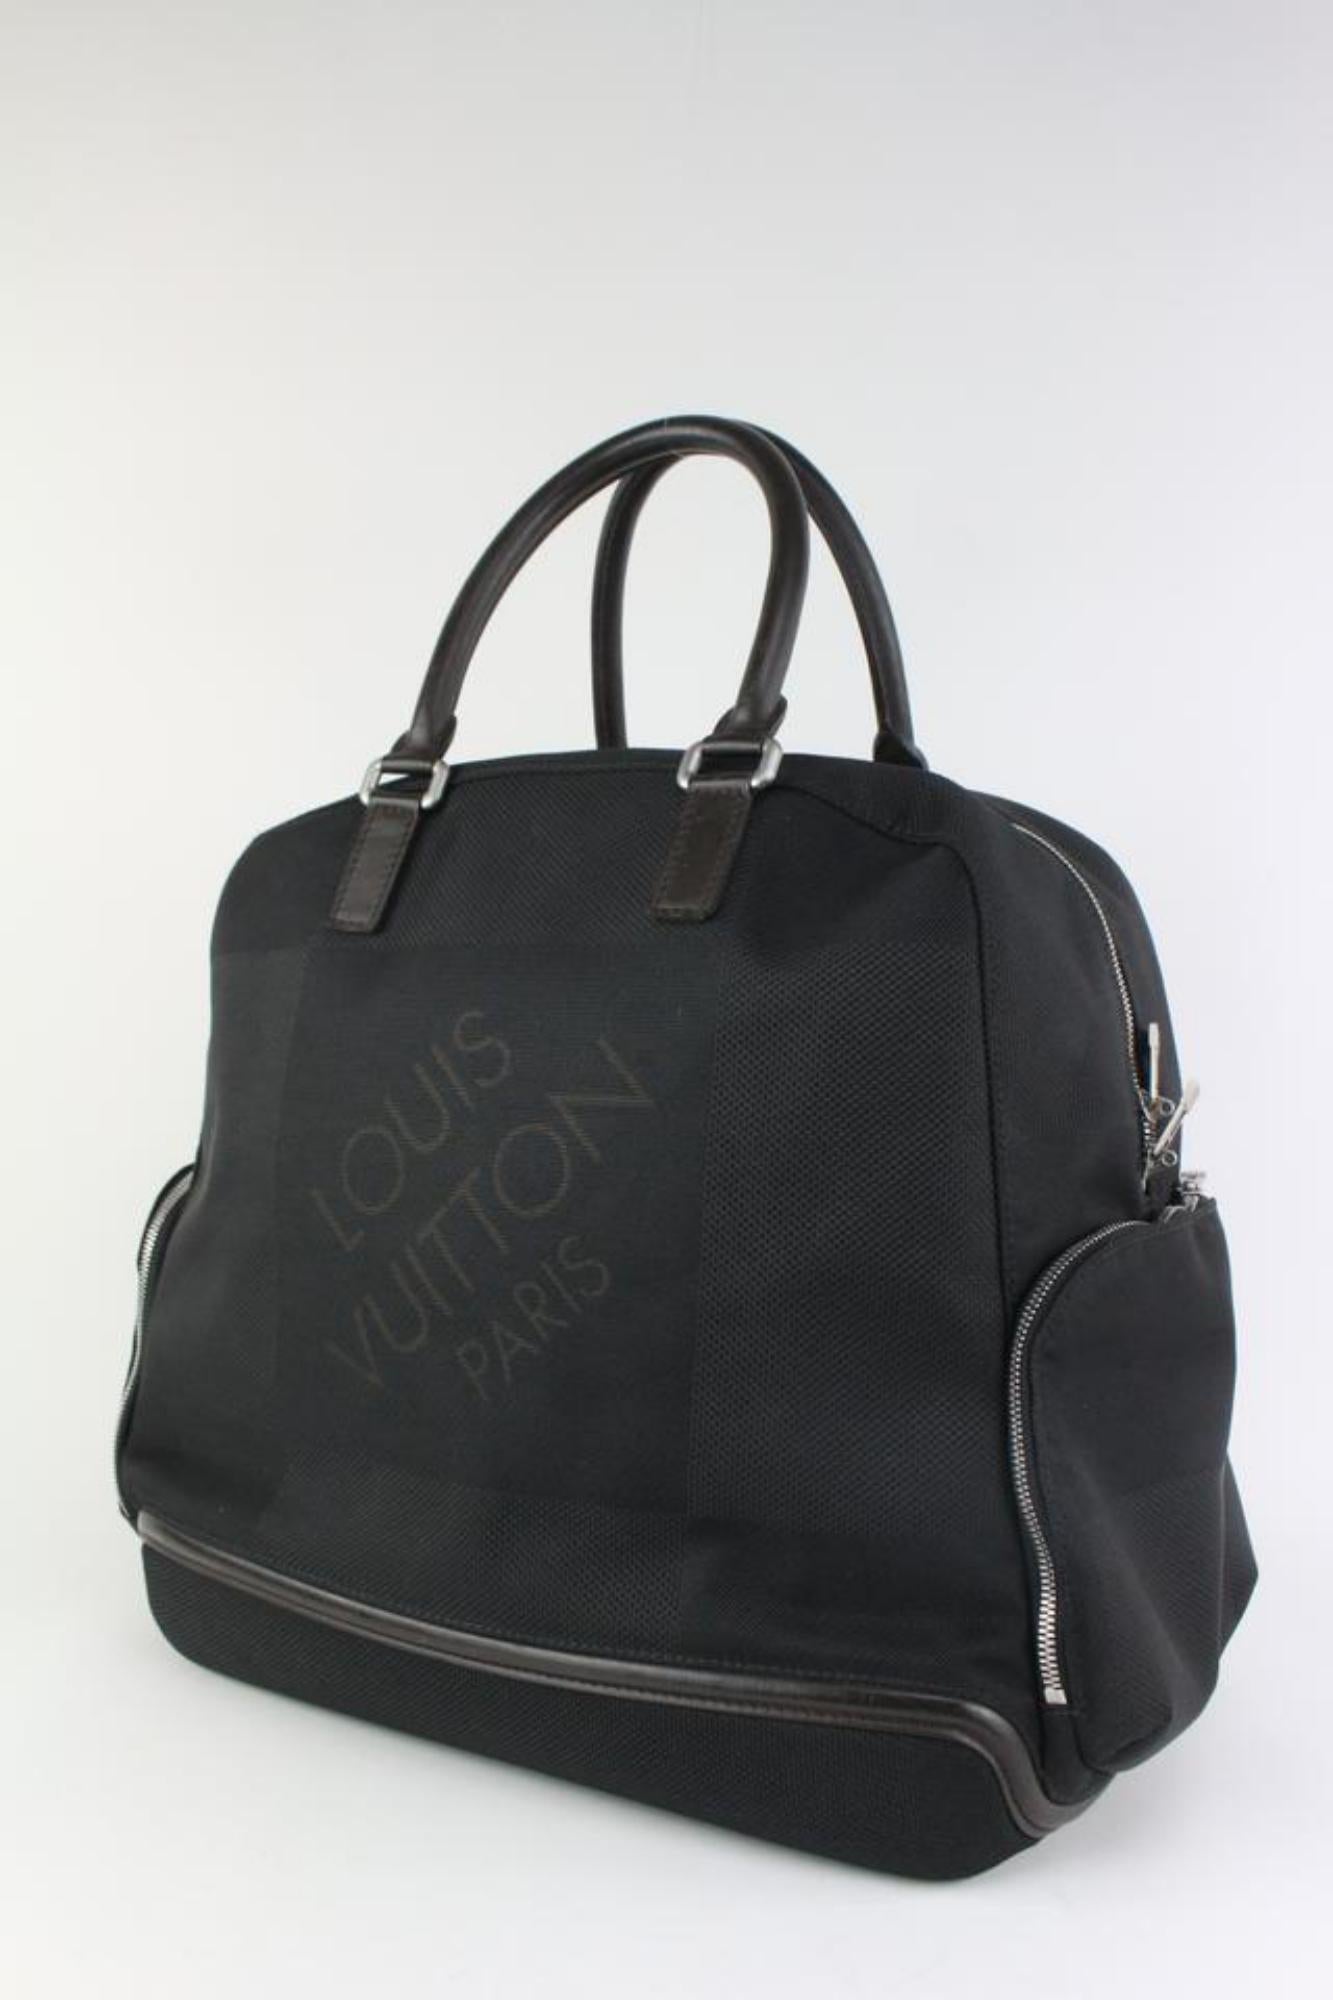 Louis Vuitton Black Damier Geant Aventurier Polaire Travel Bag 122lv14 For Sale 8